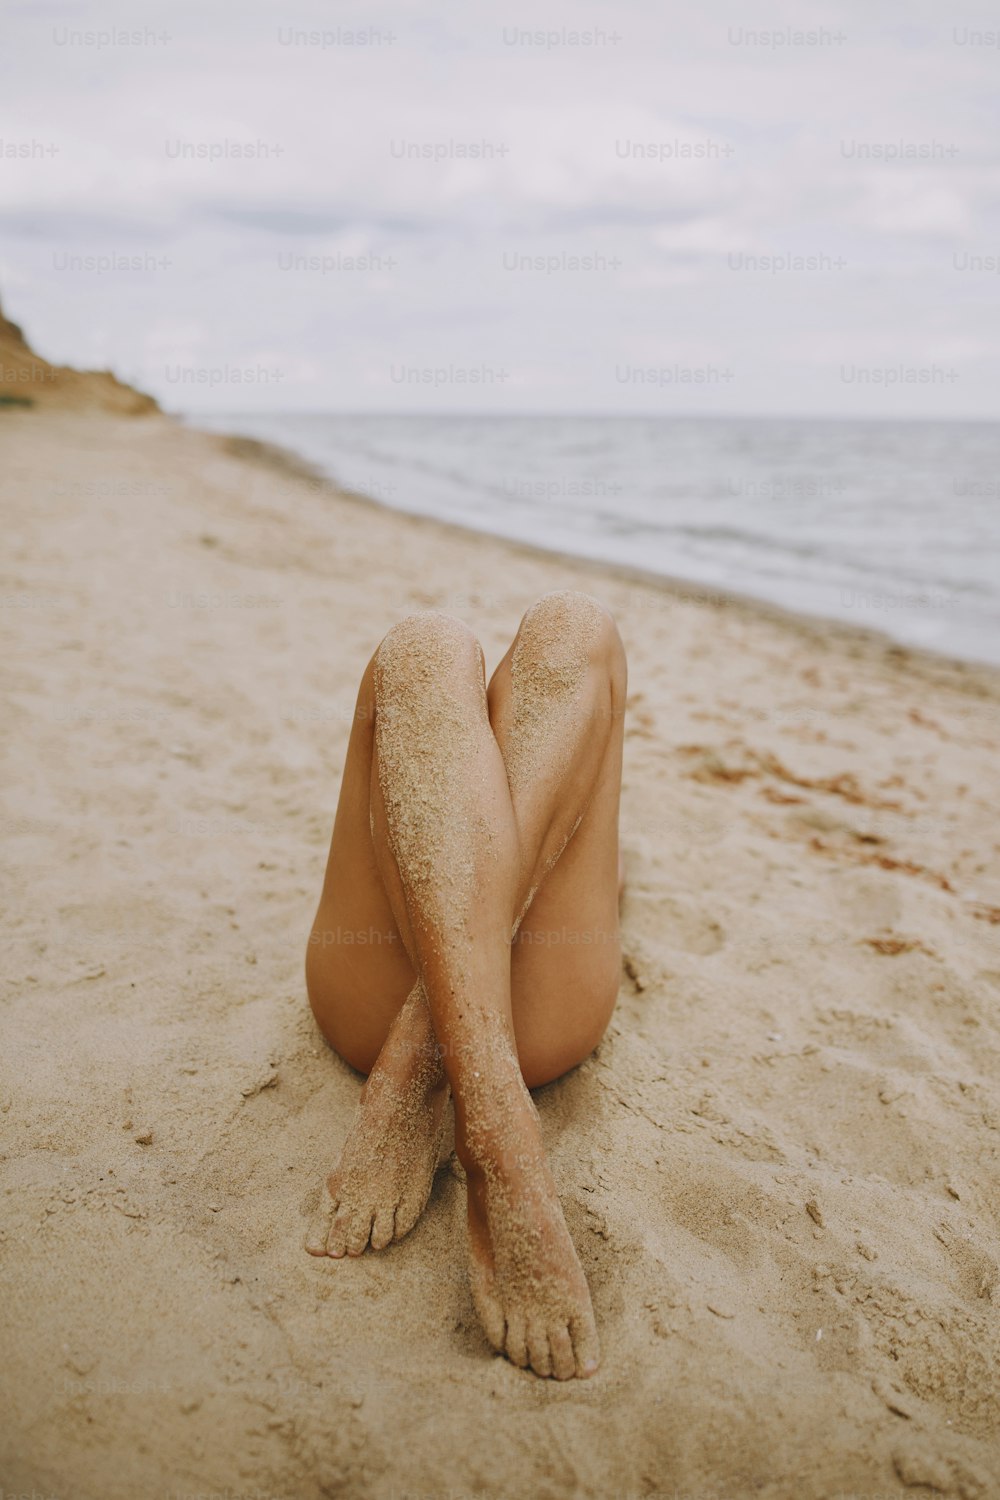 Gambe abbronzate di una ragazza sulla spiaggia con sabbia sulla pelle liscia. Bella immagine autentica e insolita. Giovane donna che si rilassa in riva al mare con gambe sabbiose. Vacanze estive. Cura dei piedi